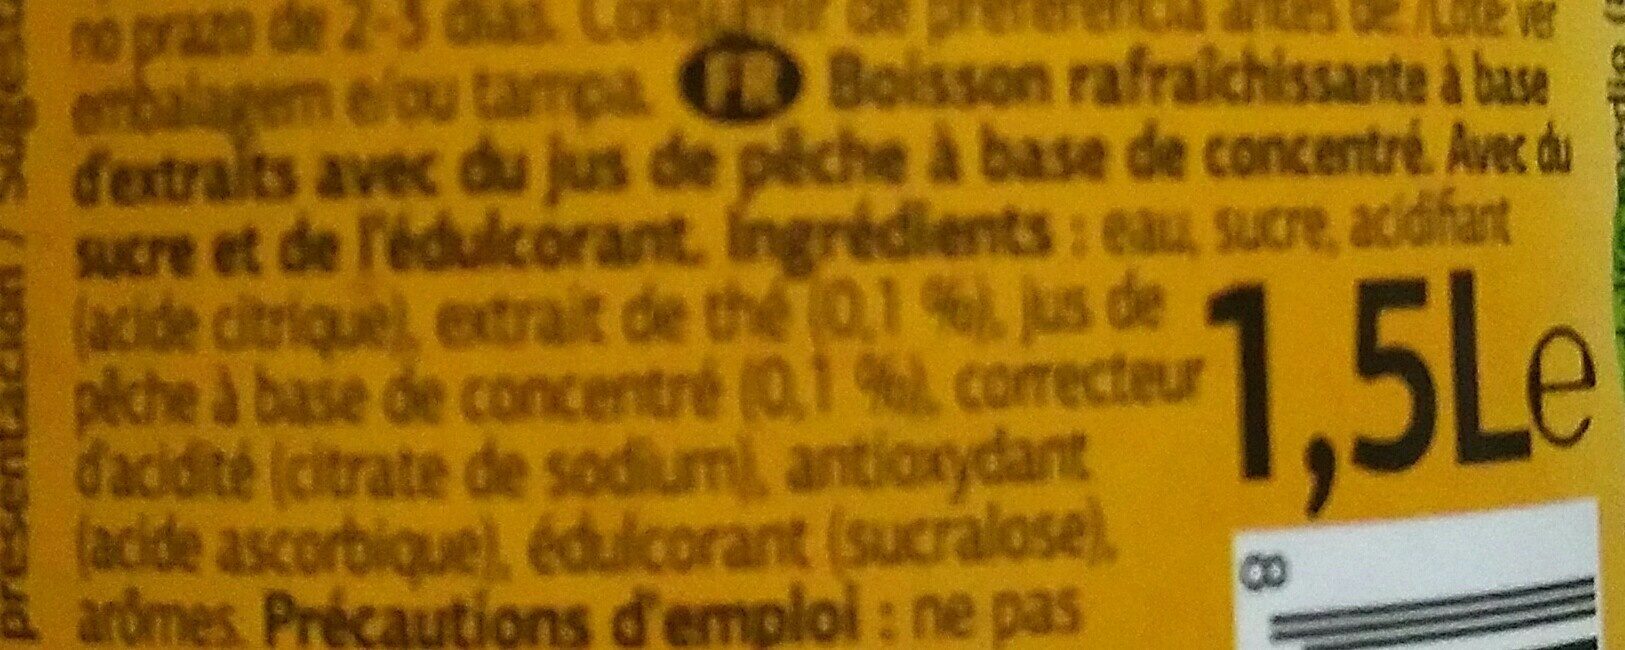 Ice tea - Ingredients - fr